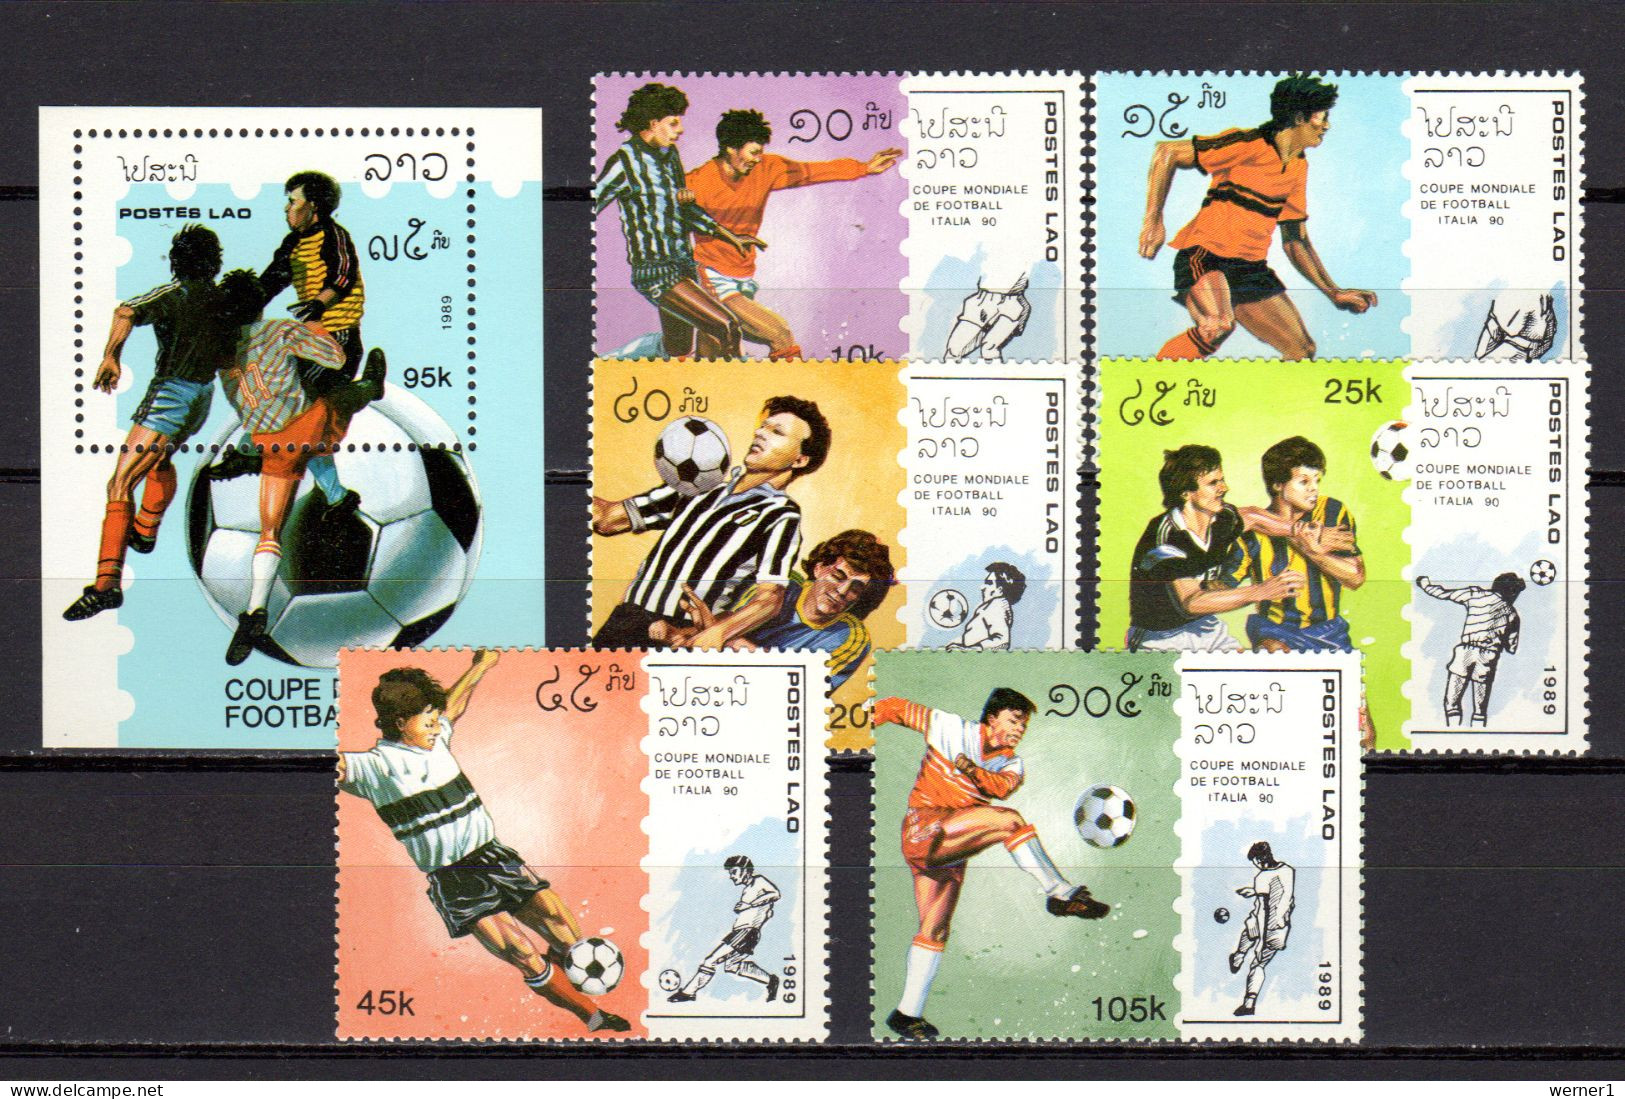 Laos 1989 Football Soccer World Cup Set Of 6 + S/s MNH - Ungebraucht